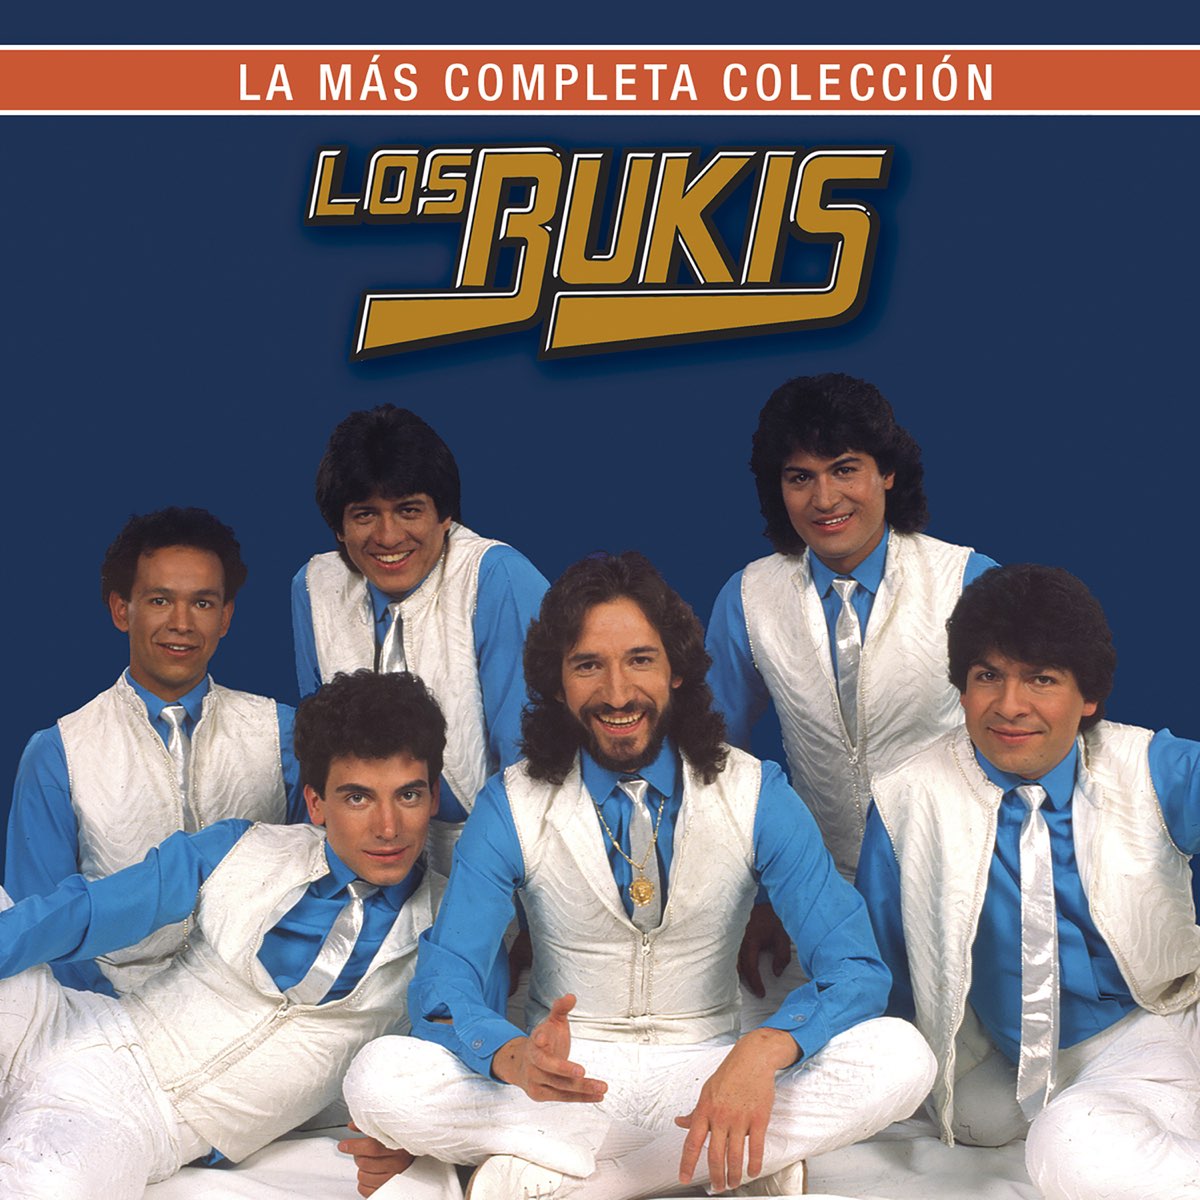 La Más Completa Colección by Los Bukis on Apple Music